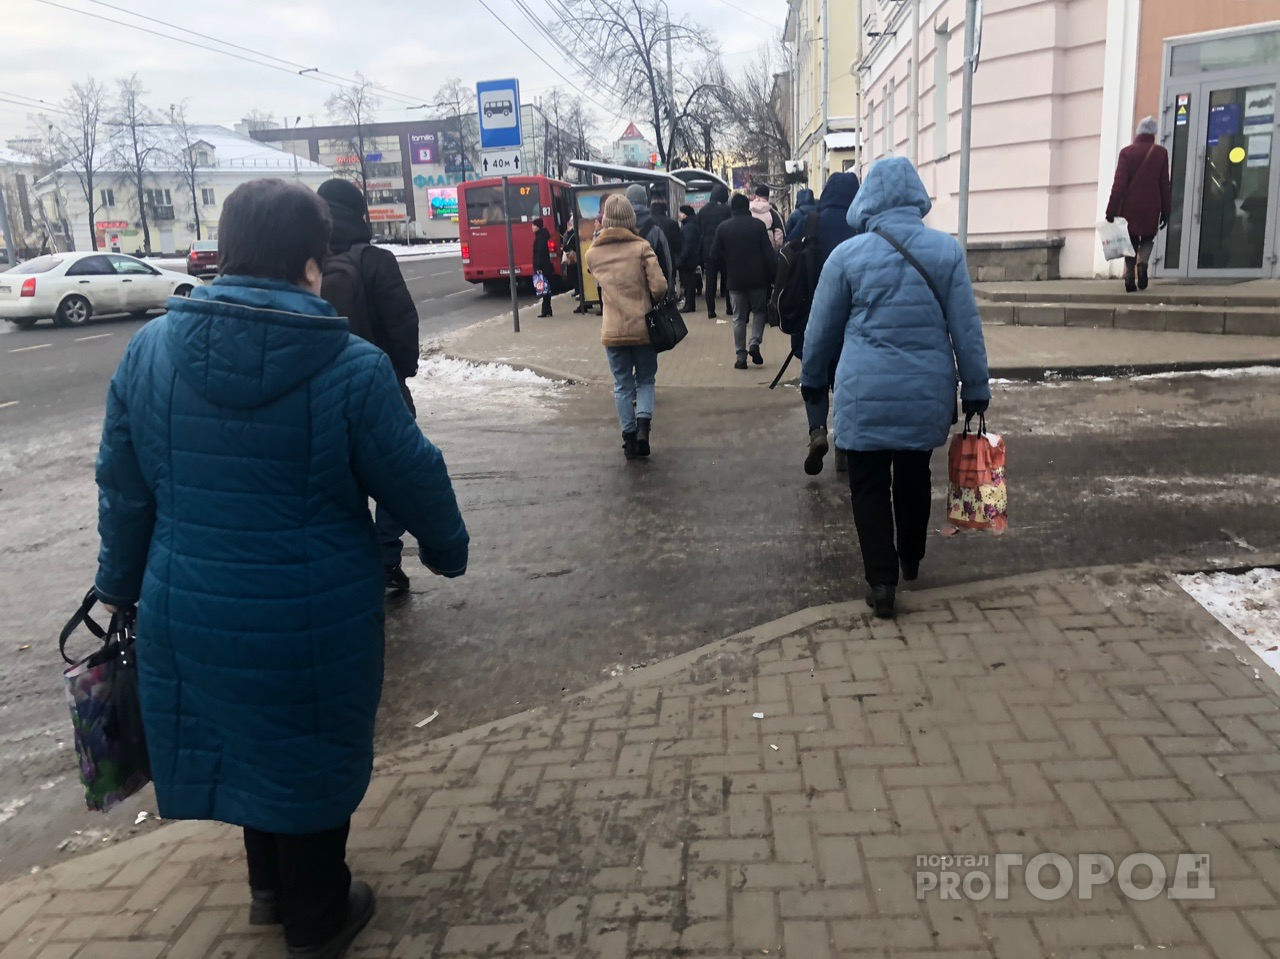 Перехватят теле- и радиосигналы: власти предупреждают о проверке с сиренами в Ярославле